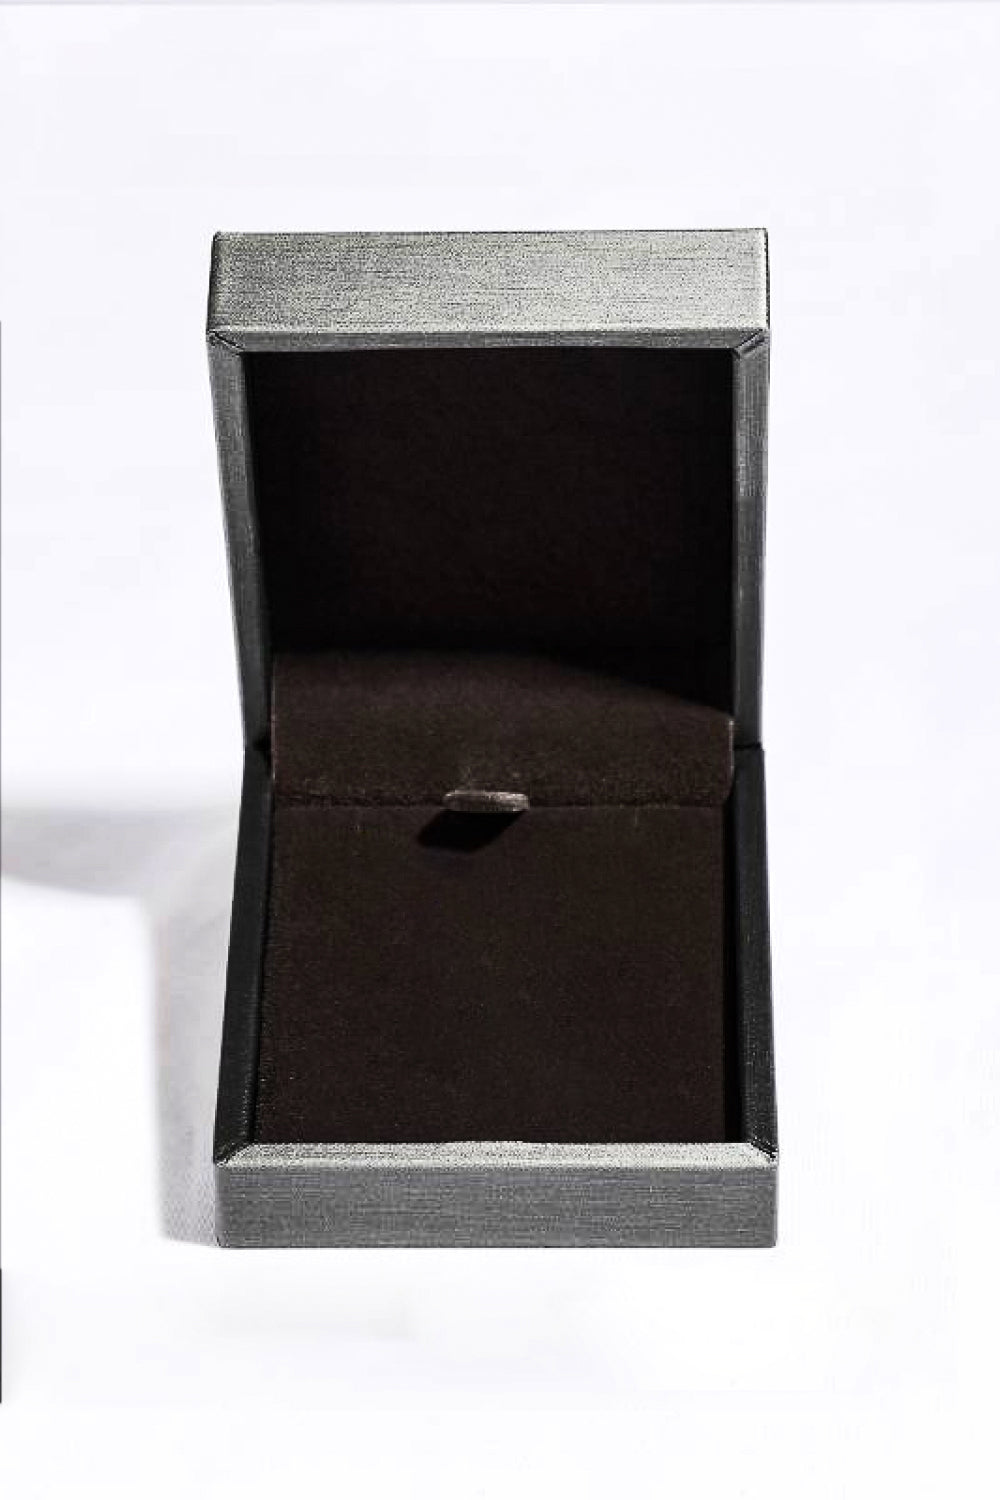 Minimalist 925 Sterling Silver Moissanite Pendant Necklace - DromedarShop.com Online Boutique